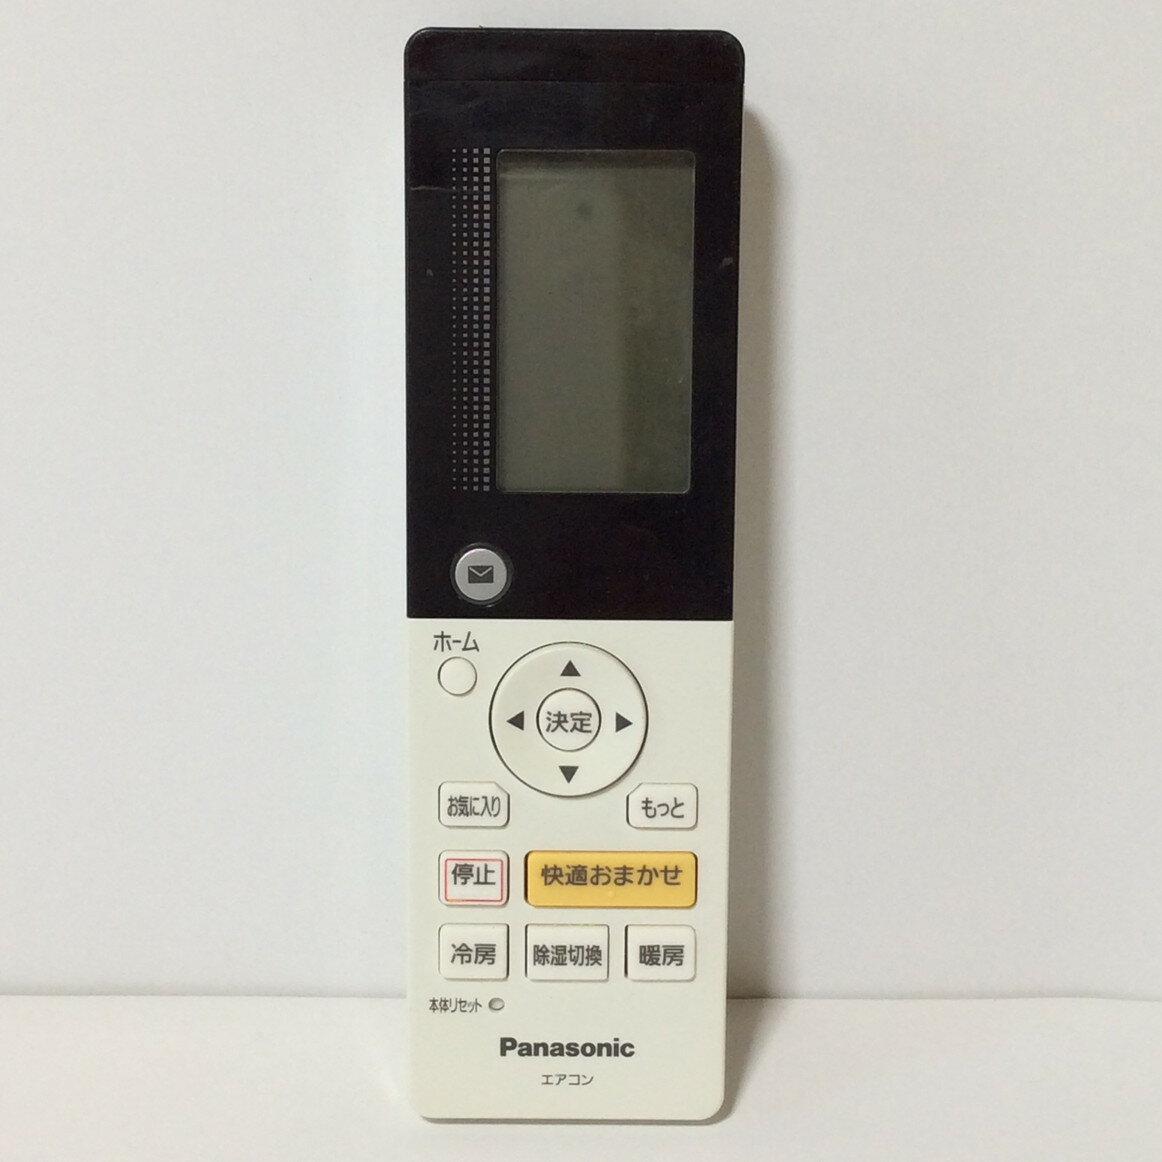 【中古】エアコン リモコン パナソニック Panasonic A75C4417